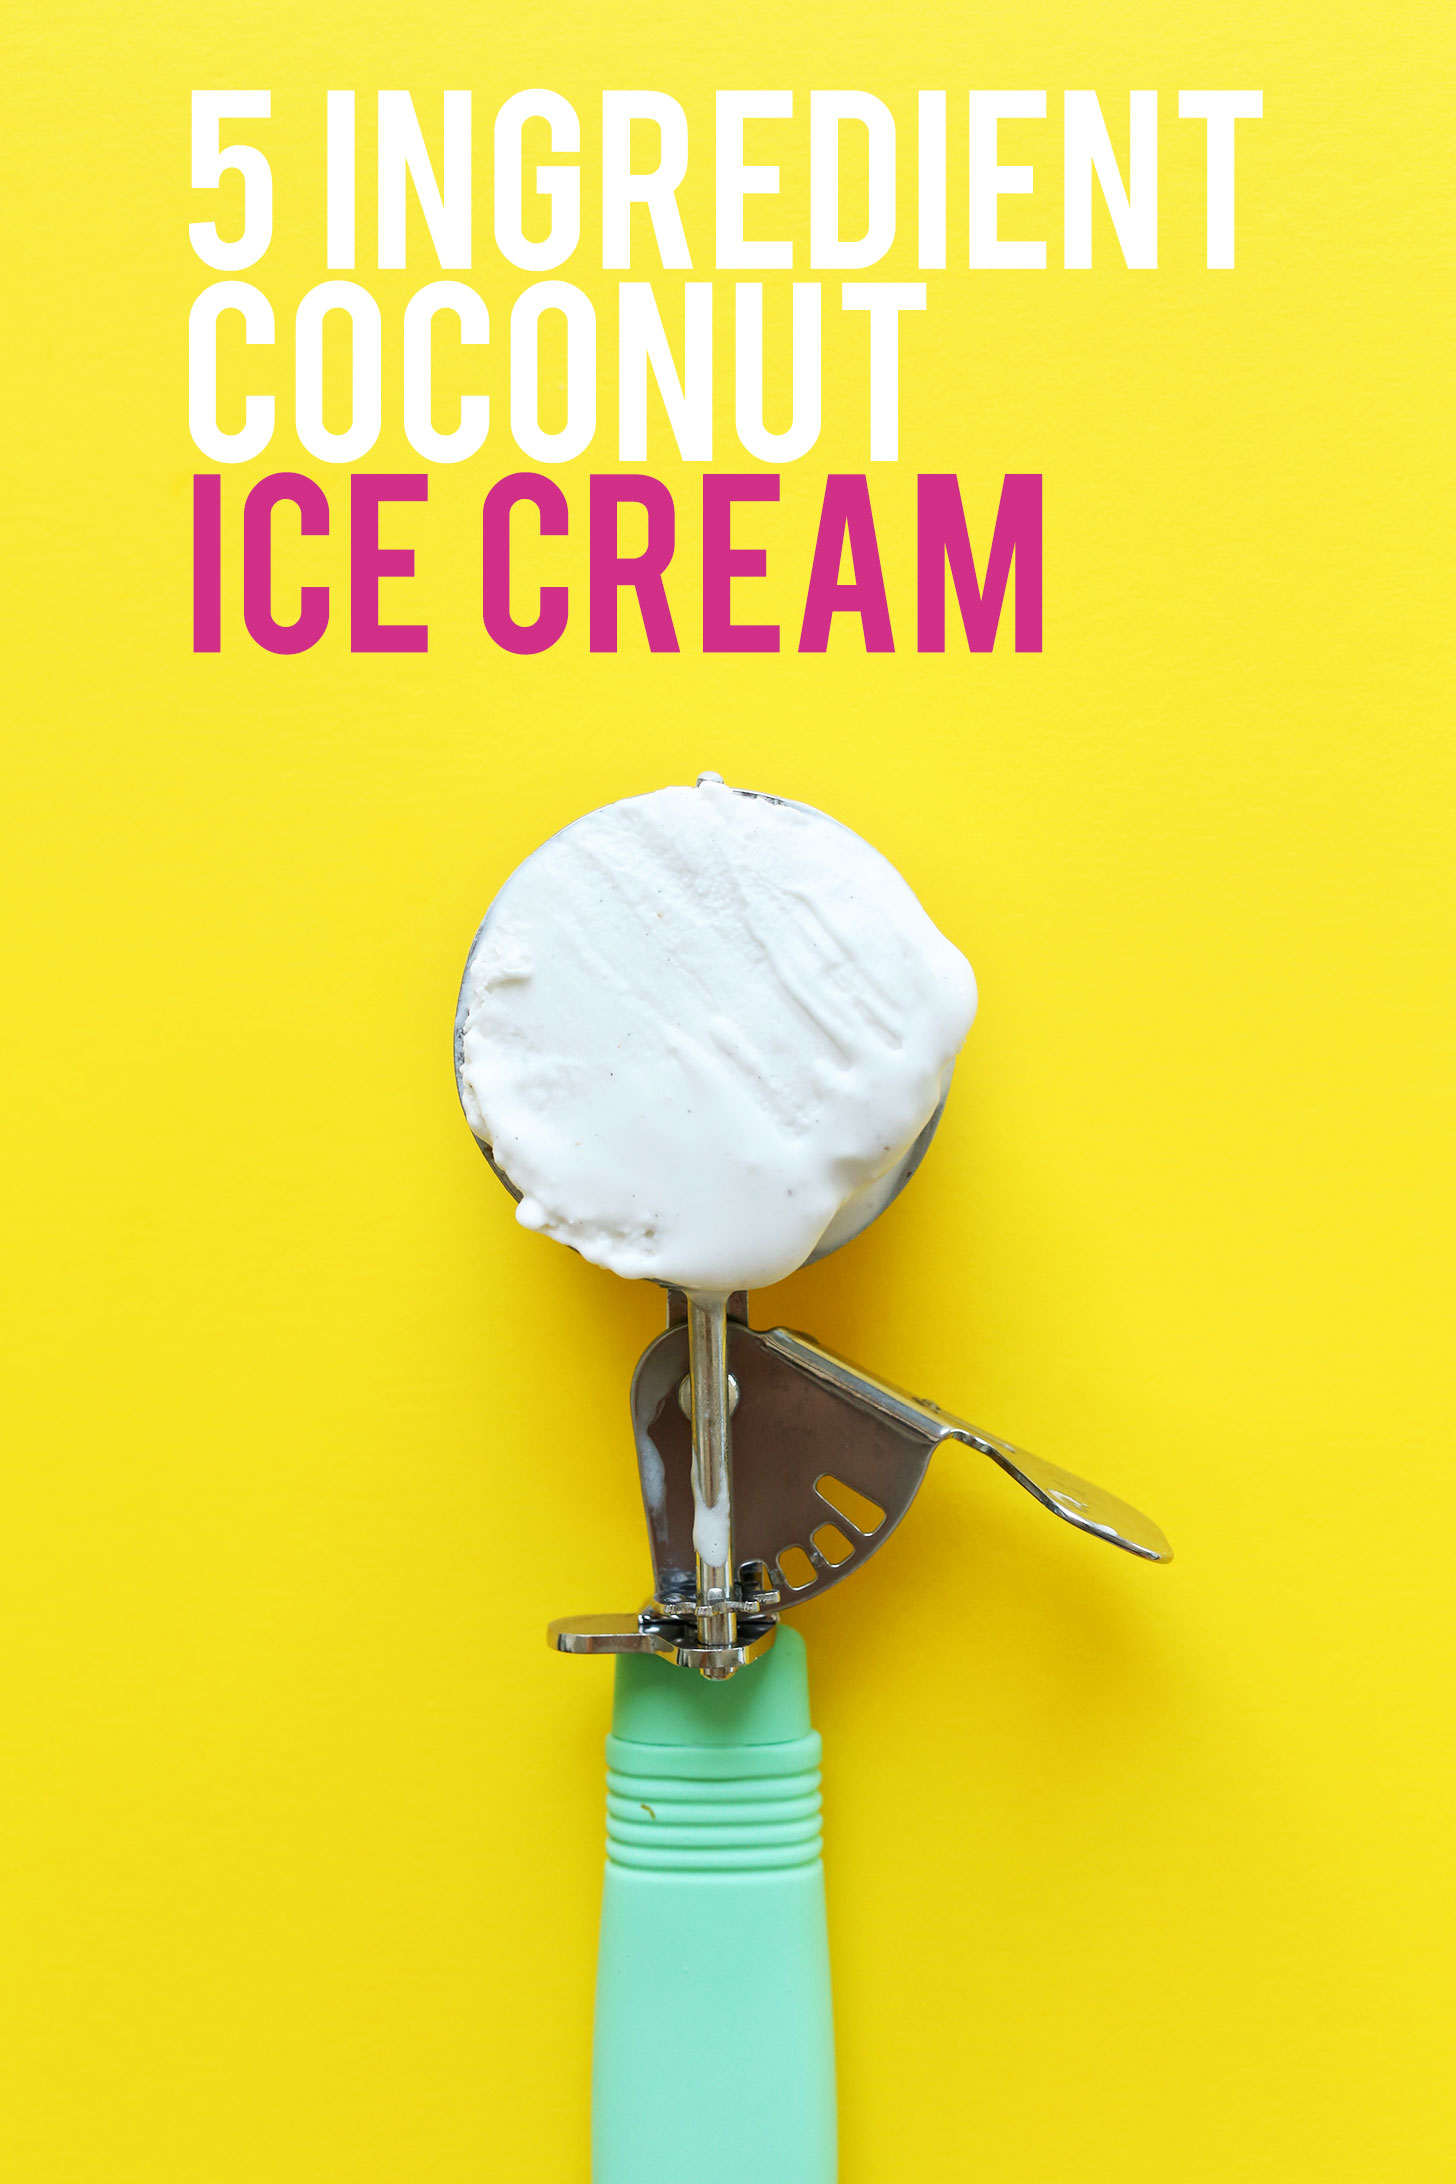 Ice cream scooper filled with our simple homemade vegan coconut ice cream recipe